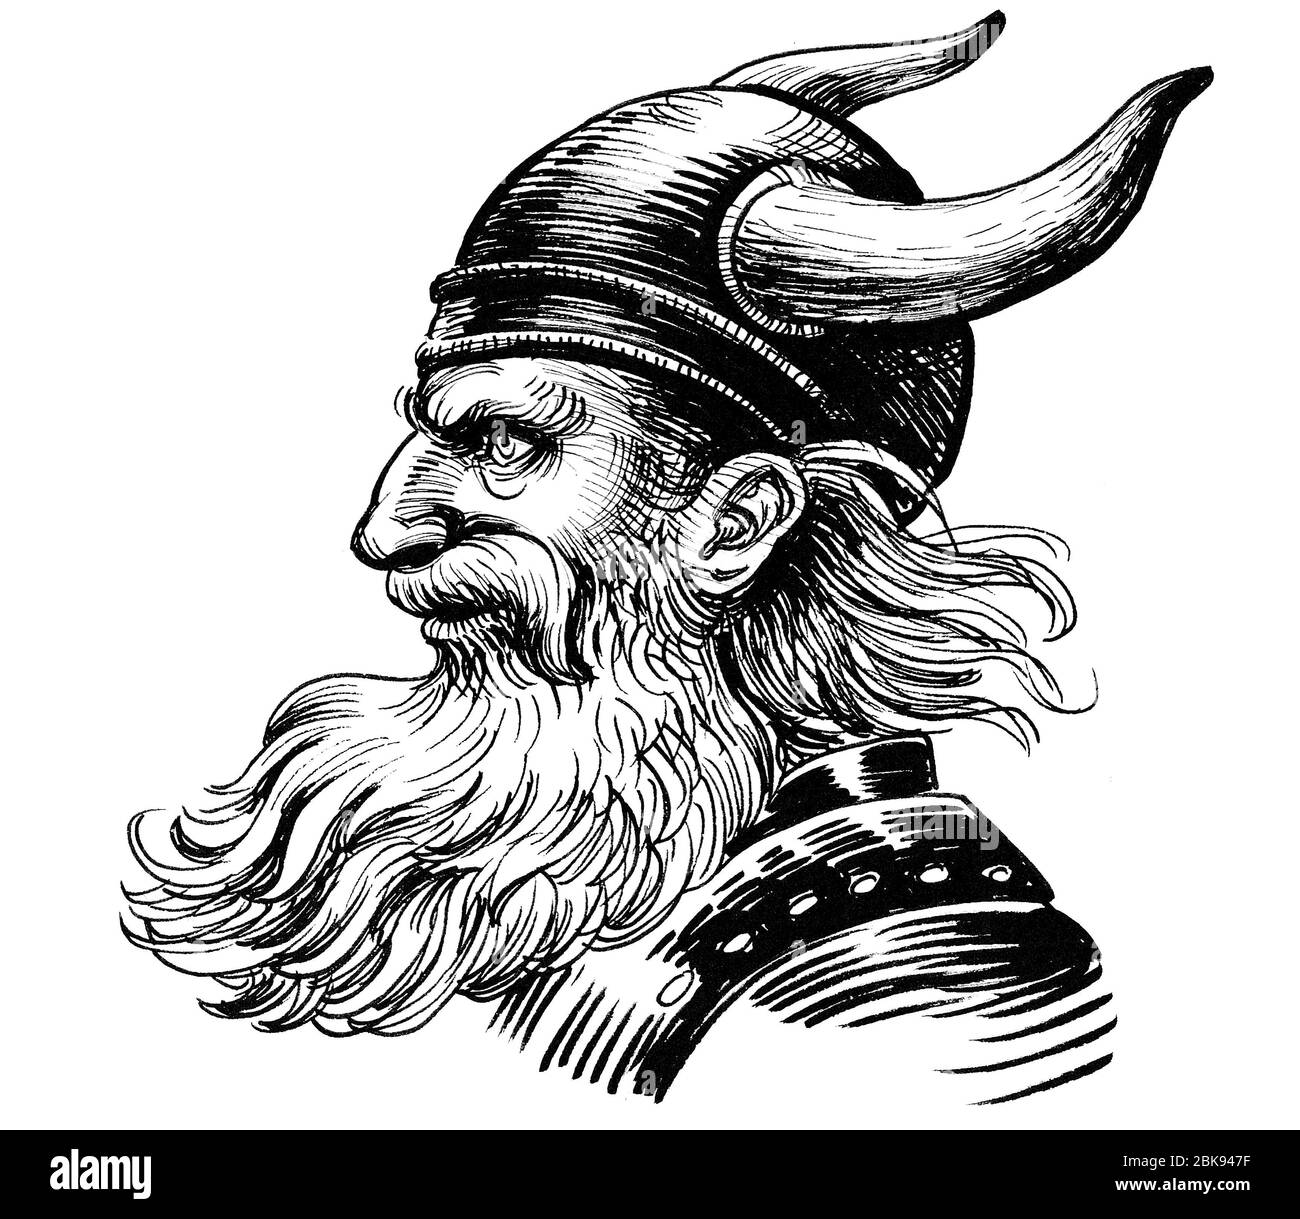 Guerrier Viking en casque à cornes. Dessin noir et blanc Banque D'Images